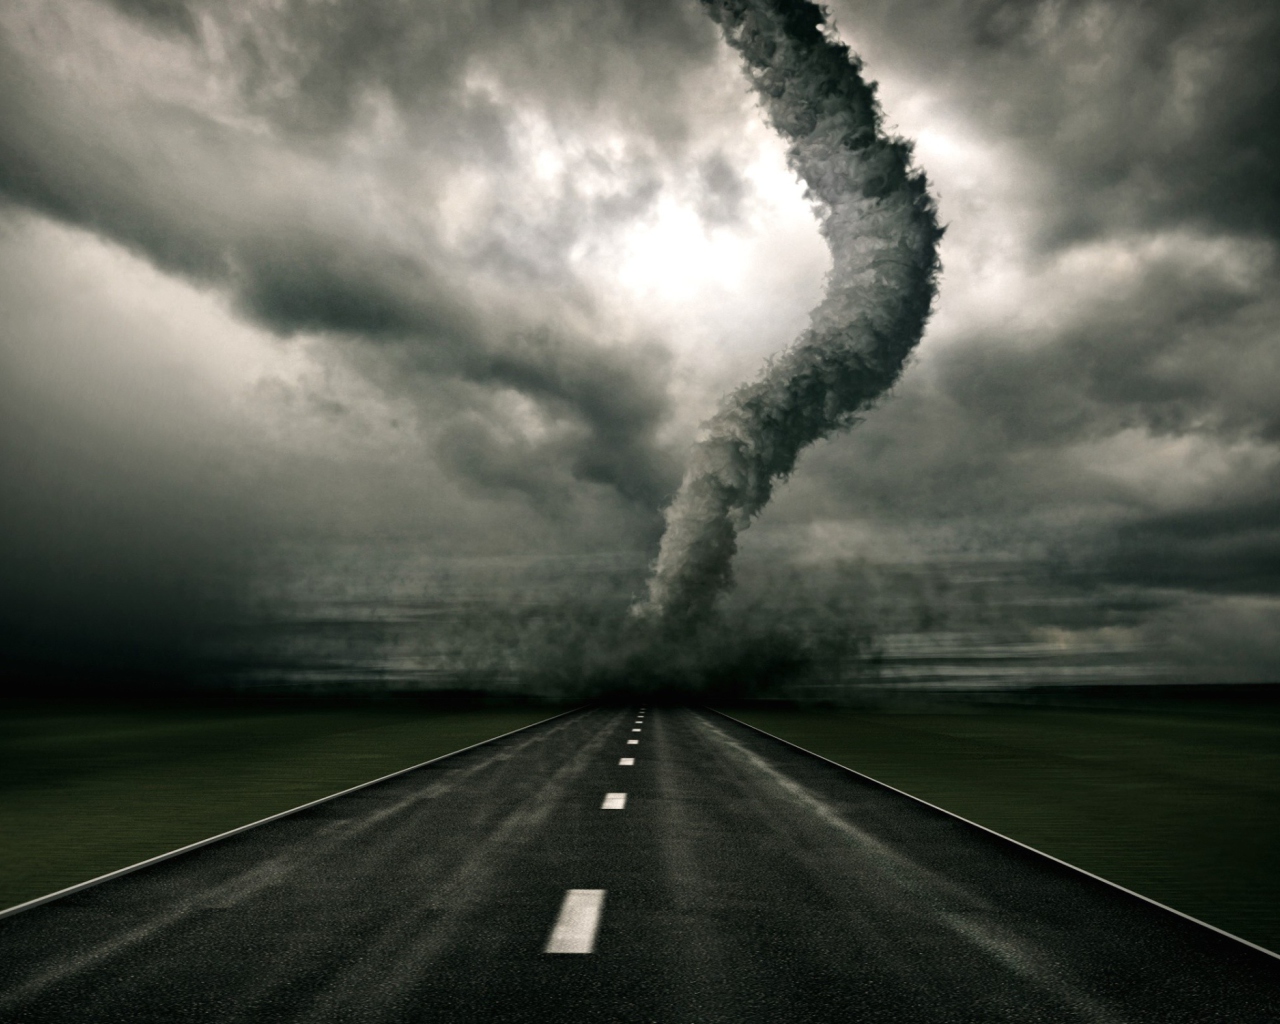 Обои Tornado On The Road 1280x1024